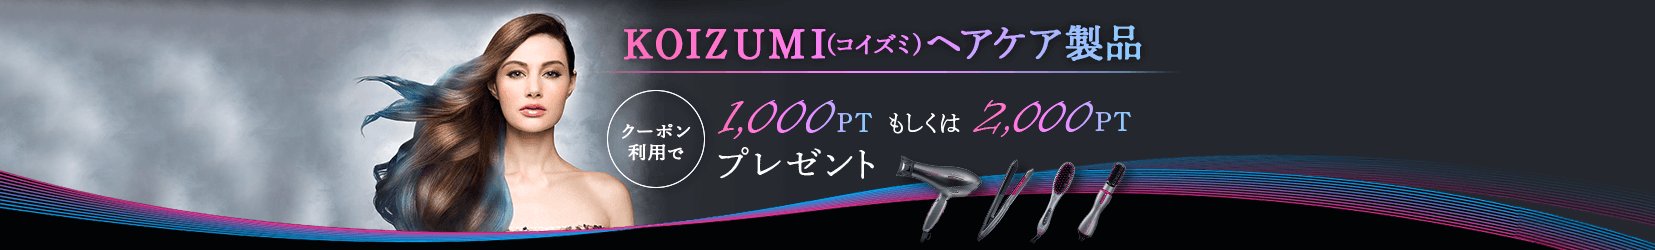 KOIZUMI（コイズミ）ヘアケア製品 クーポン利用で1,000PTもしくは2,000PTプレゼント